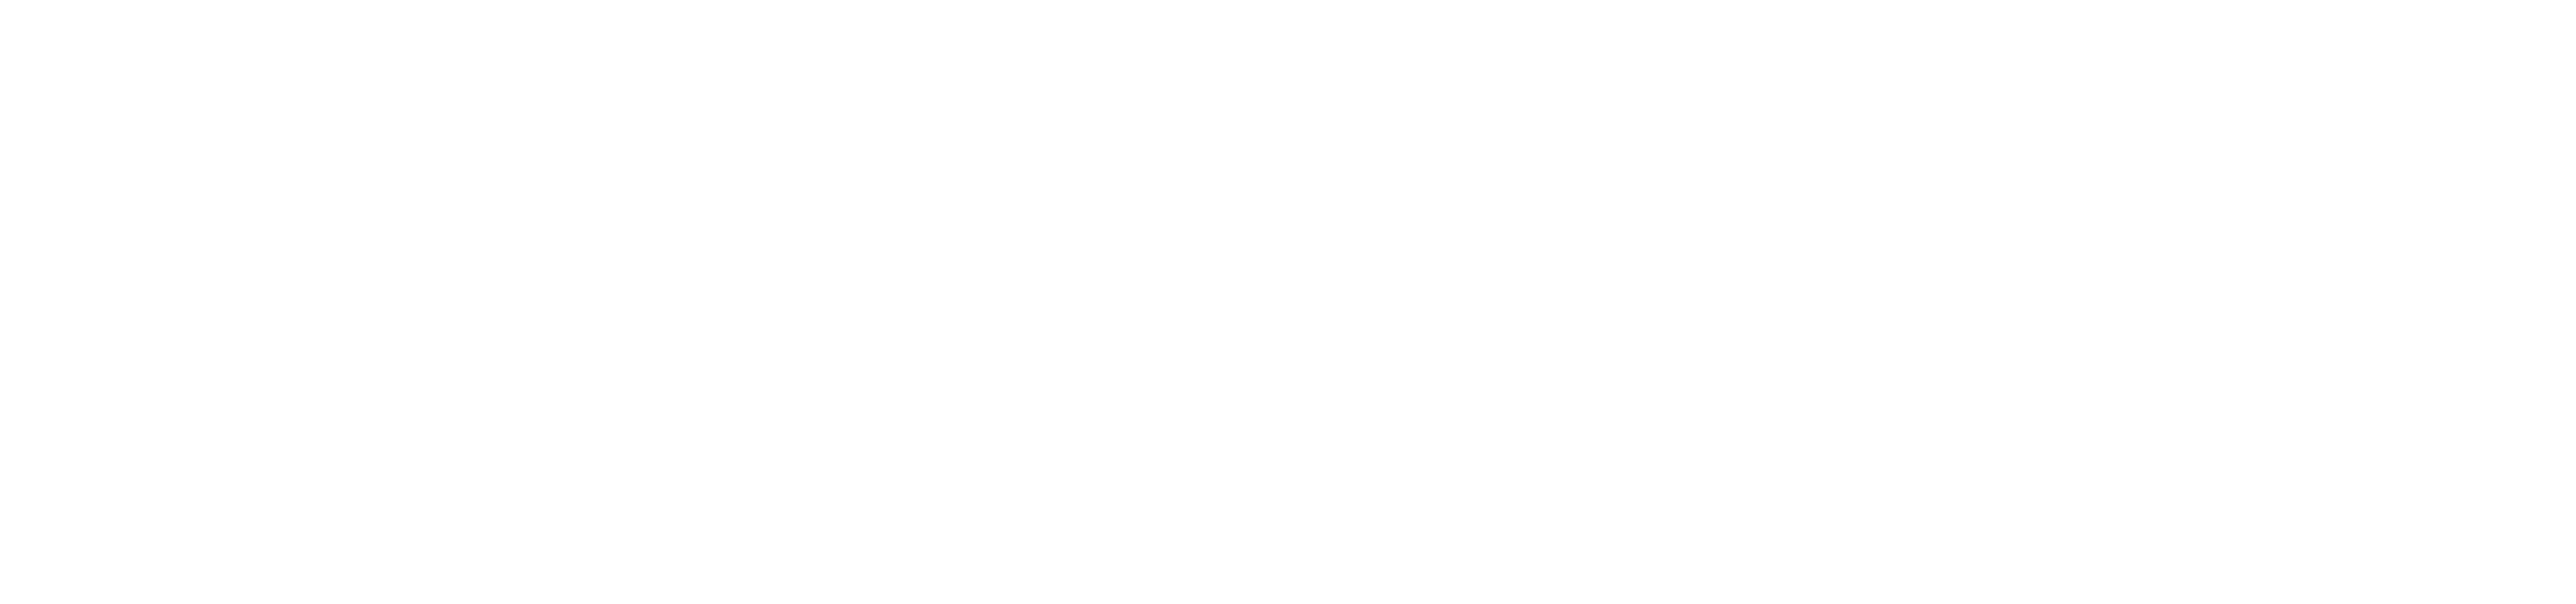 white logo of pinnacle florida financial group